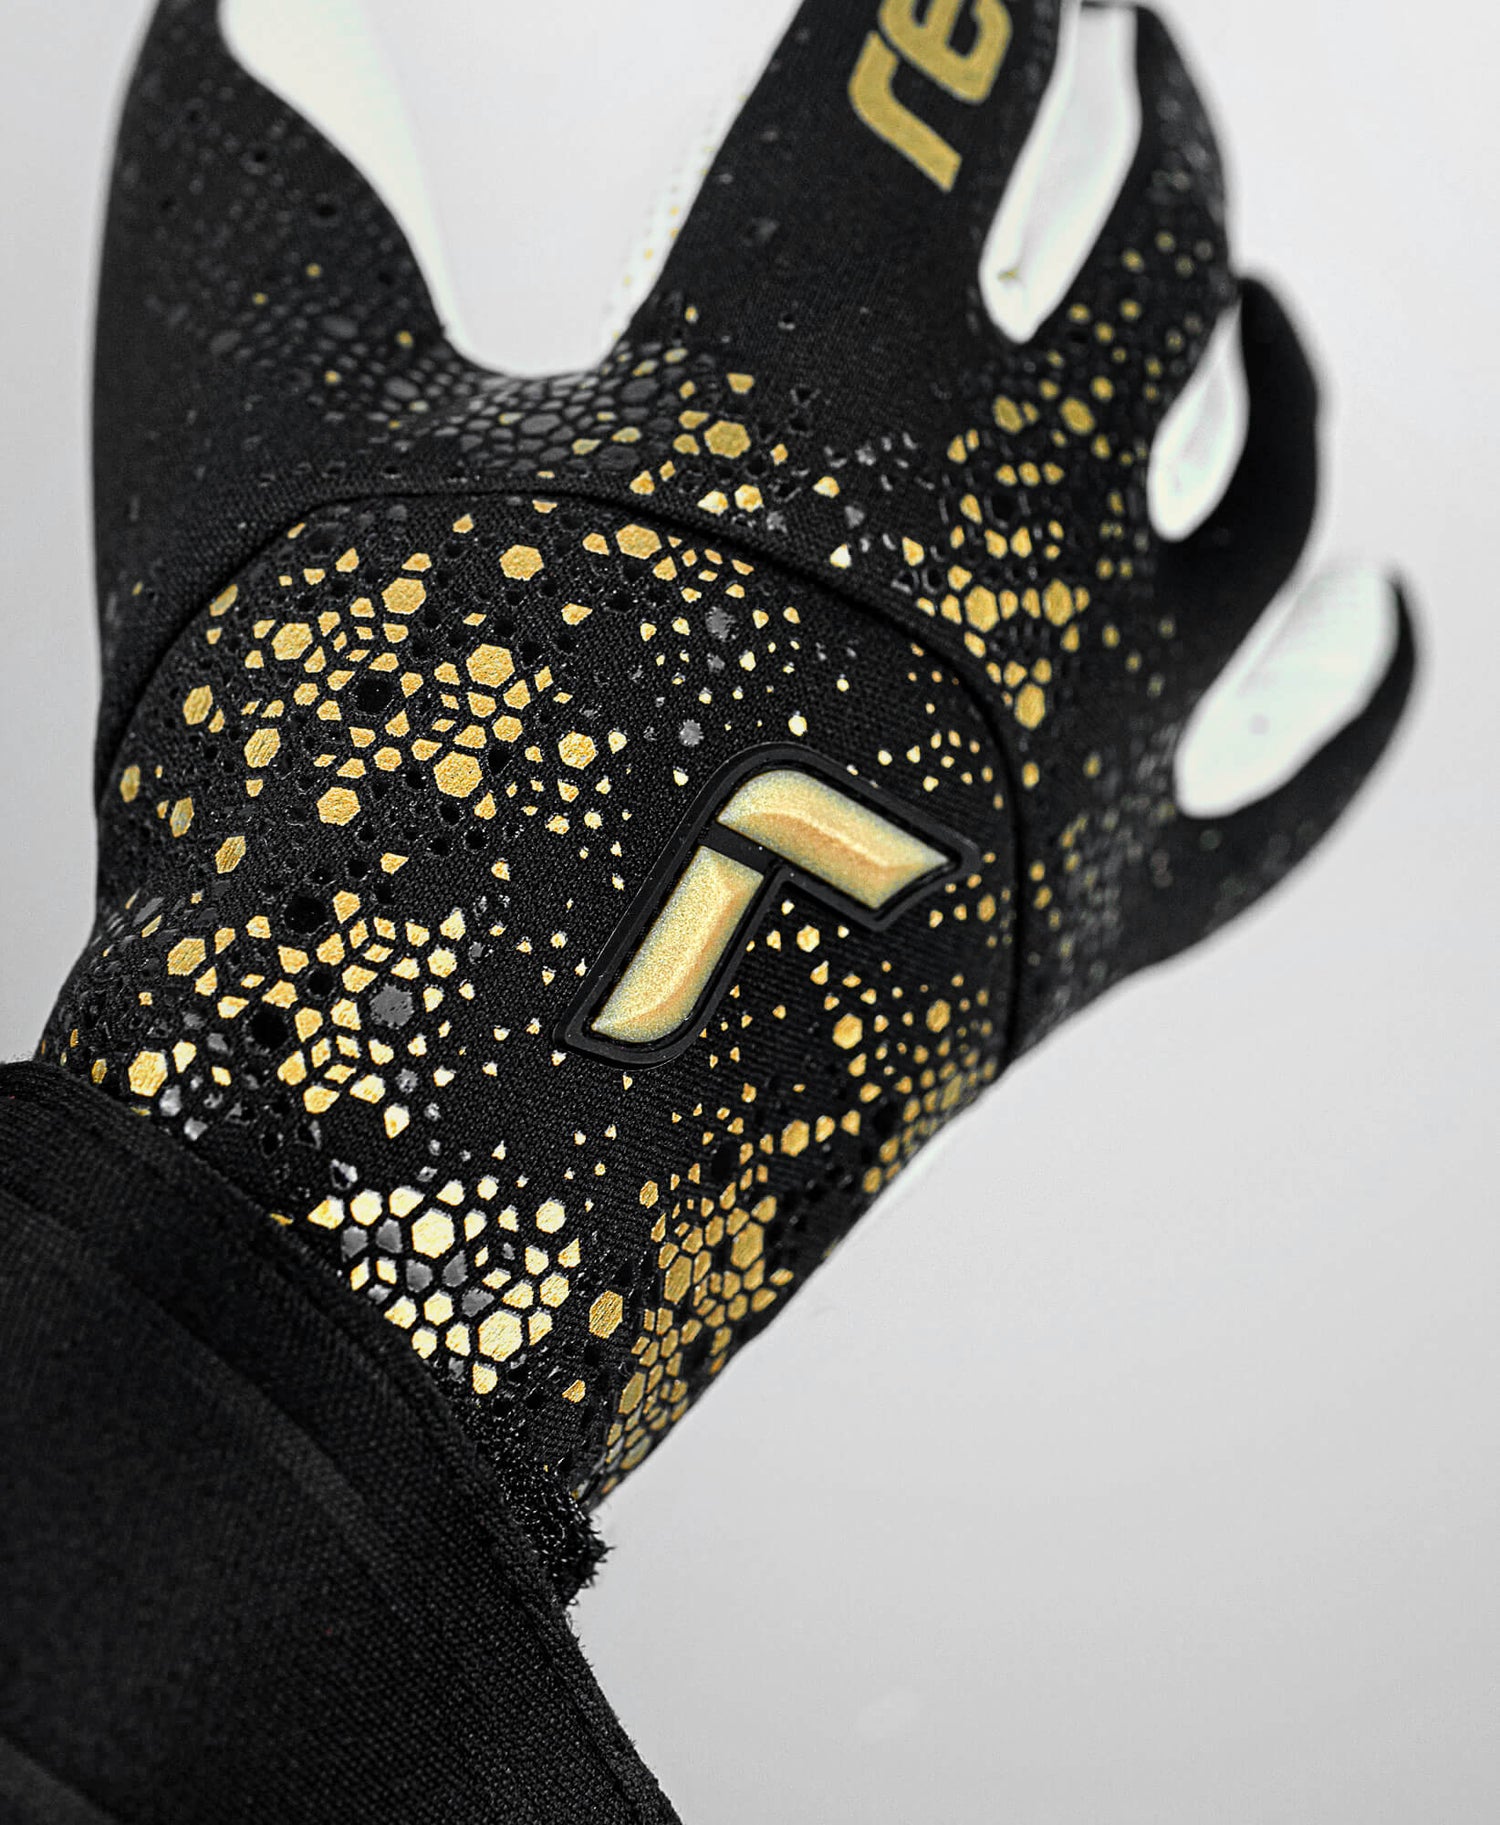 Reusch Pure Contact Gold X Glueprint Goalkeeper Gloves - Black-Gold (Detail 1)